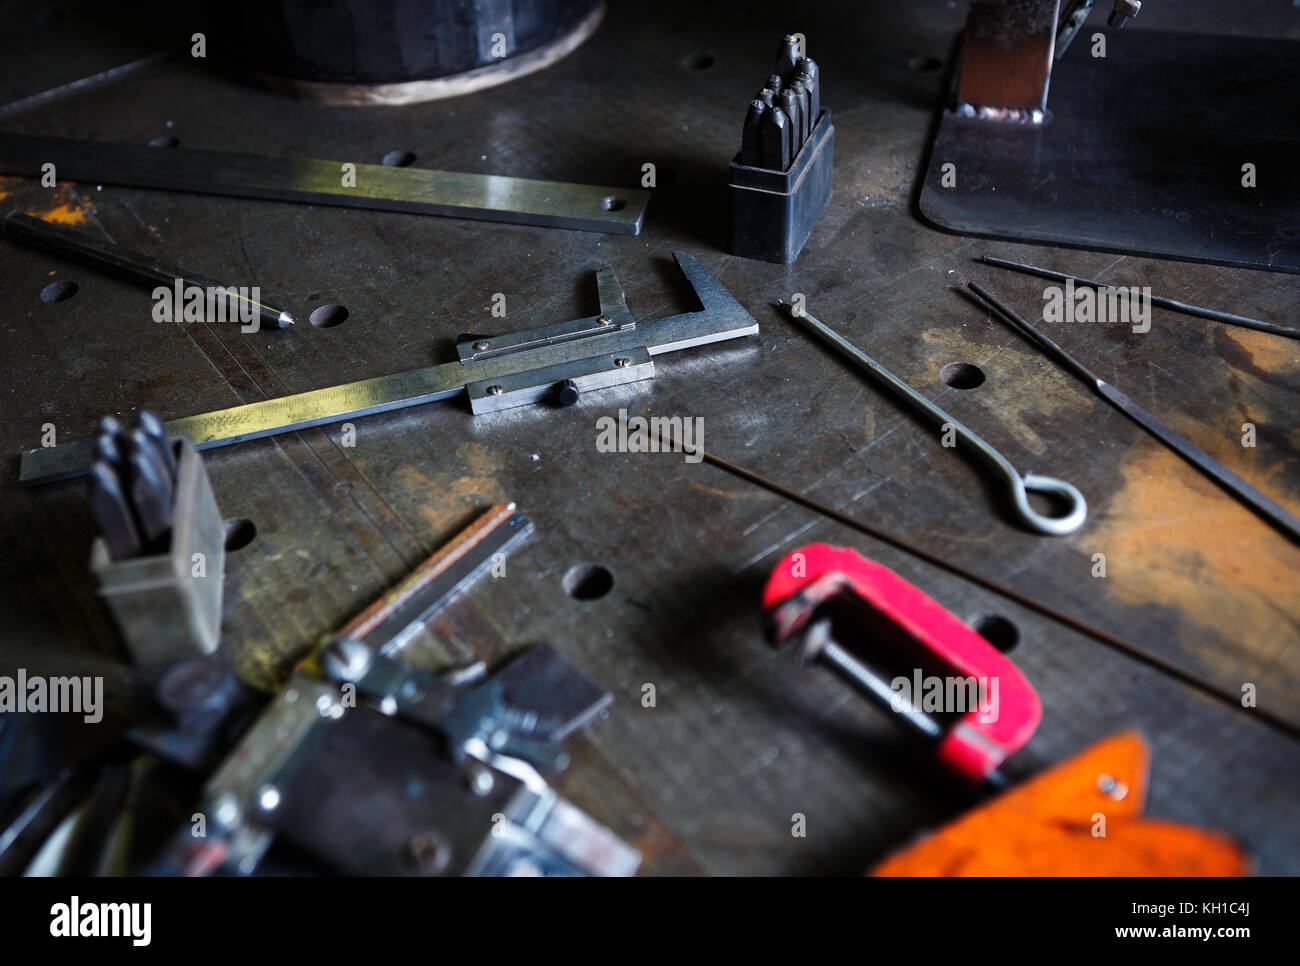 Bremssättel Werkzeug in der Werkstatt. Schweißer Metall Shop Tools